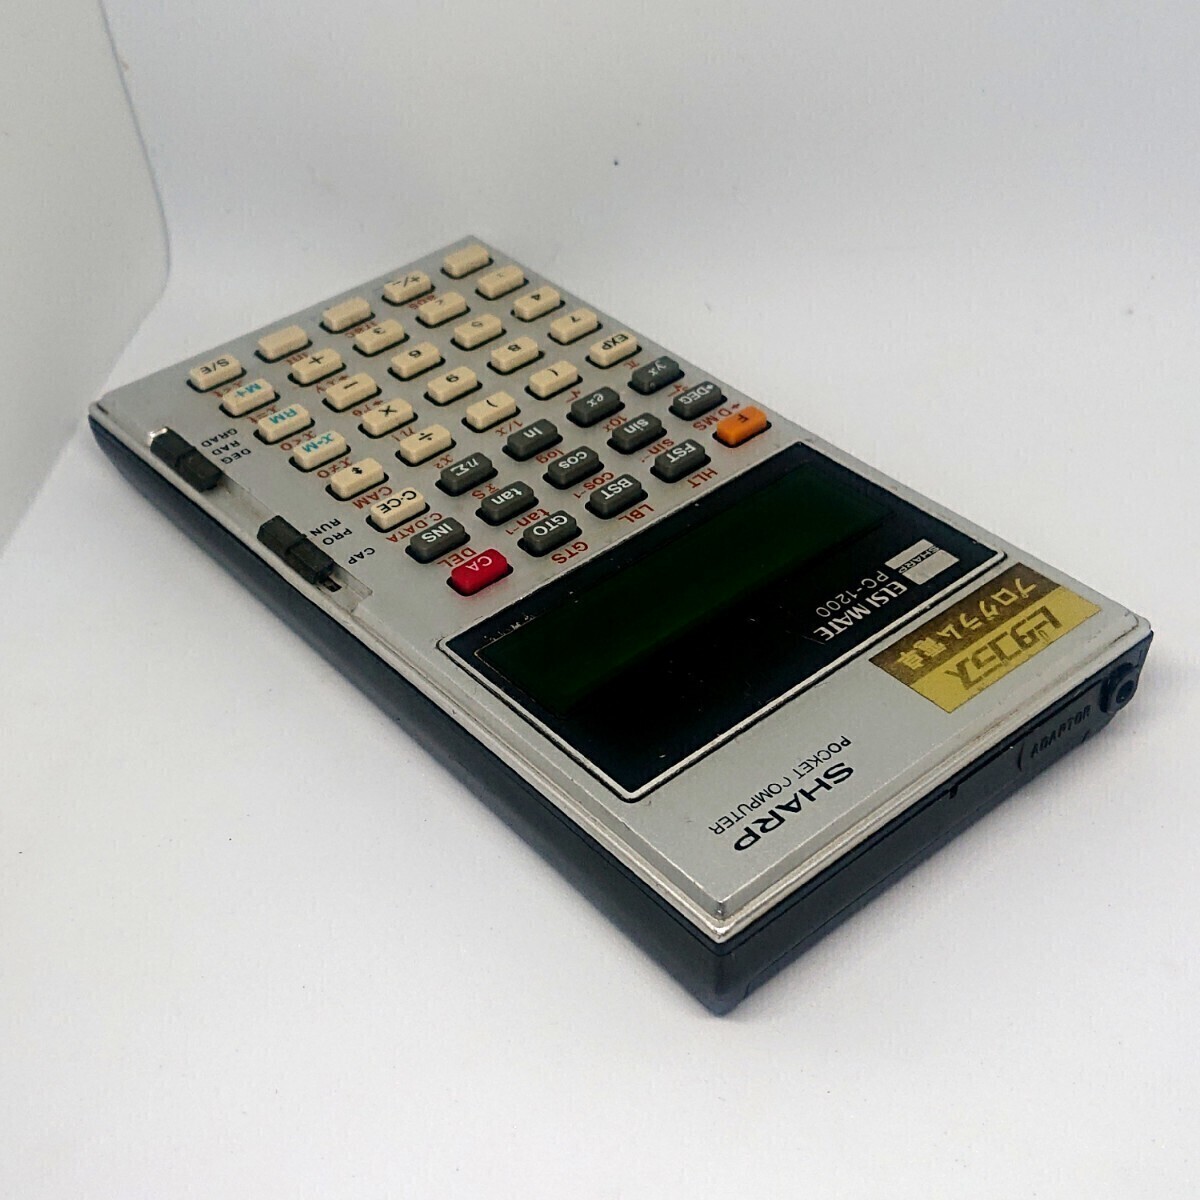 シャープ ピタゴラス 初代ポケットコンピューターSHARP PC-1200 1977年発売 プログラム電卓 関数電卓 